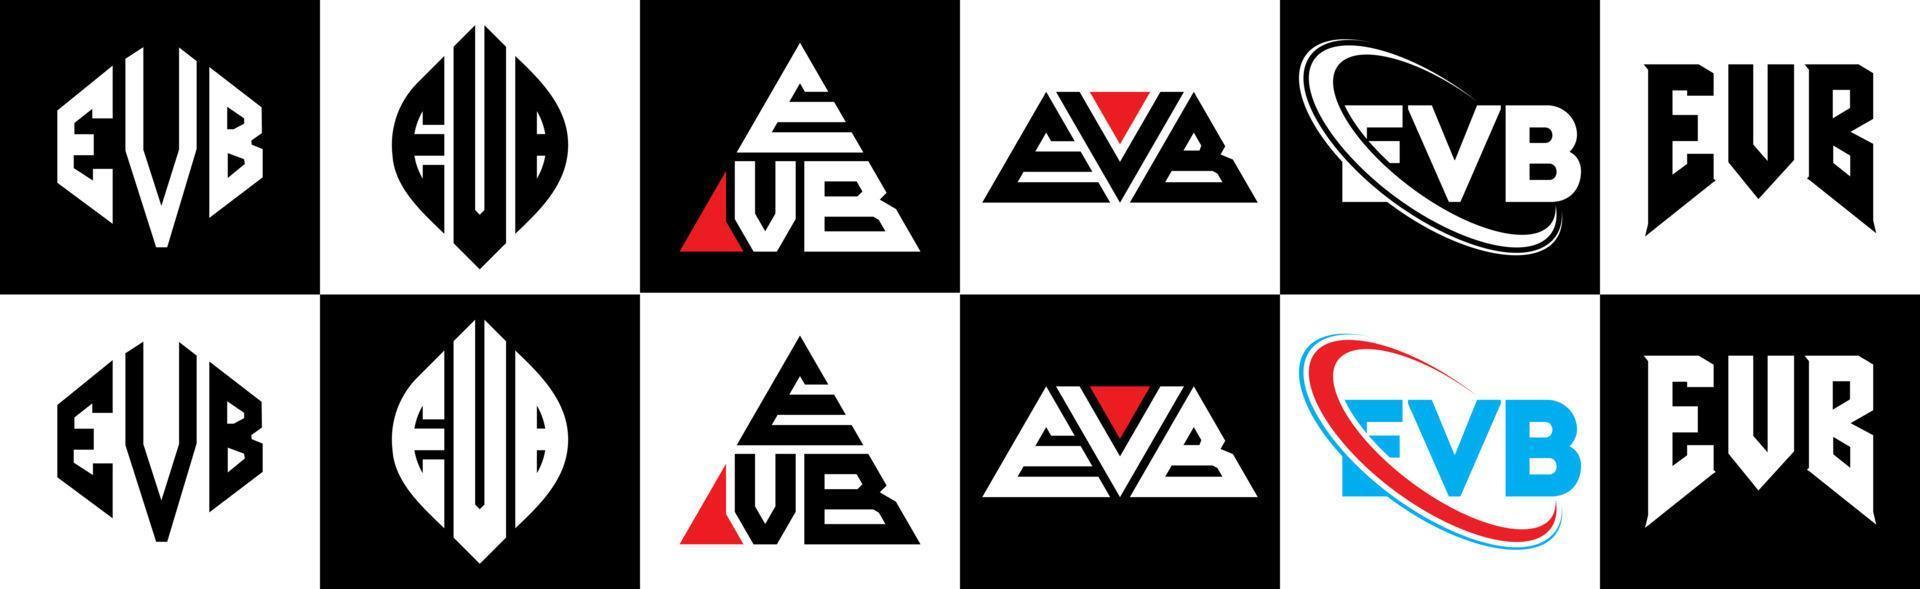 evb-Buchstaben-Logo-Design in sechs Stilen. evb Polygon, Kreis, Dreieck, Sechseck, flacher und einfacher Stil mit schwarz-weißem Buchstabenlogo in einer Zeichenfläche. evb minimalistisches und klassisches Logo vektor